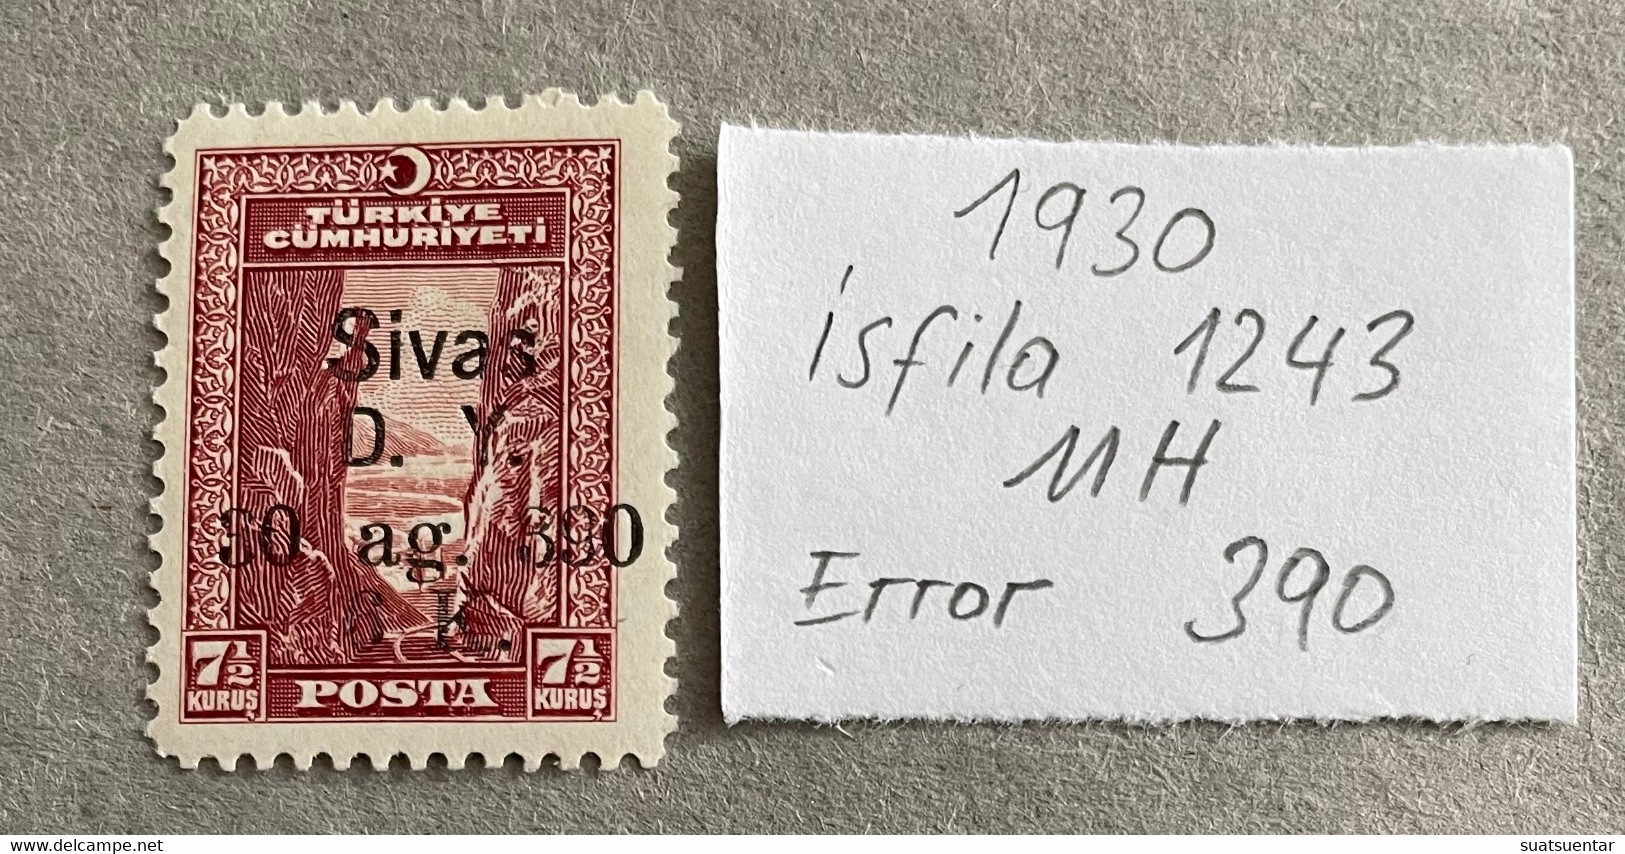 1930 Sivas-Ankara Railway Stamps Error   390 MH Isfila 1243 - Ungebraucht